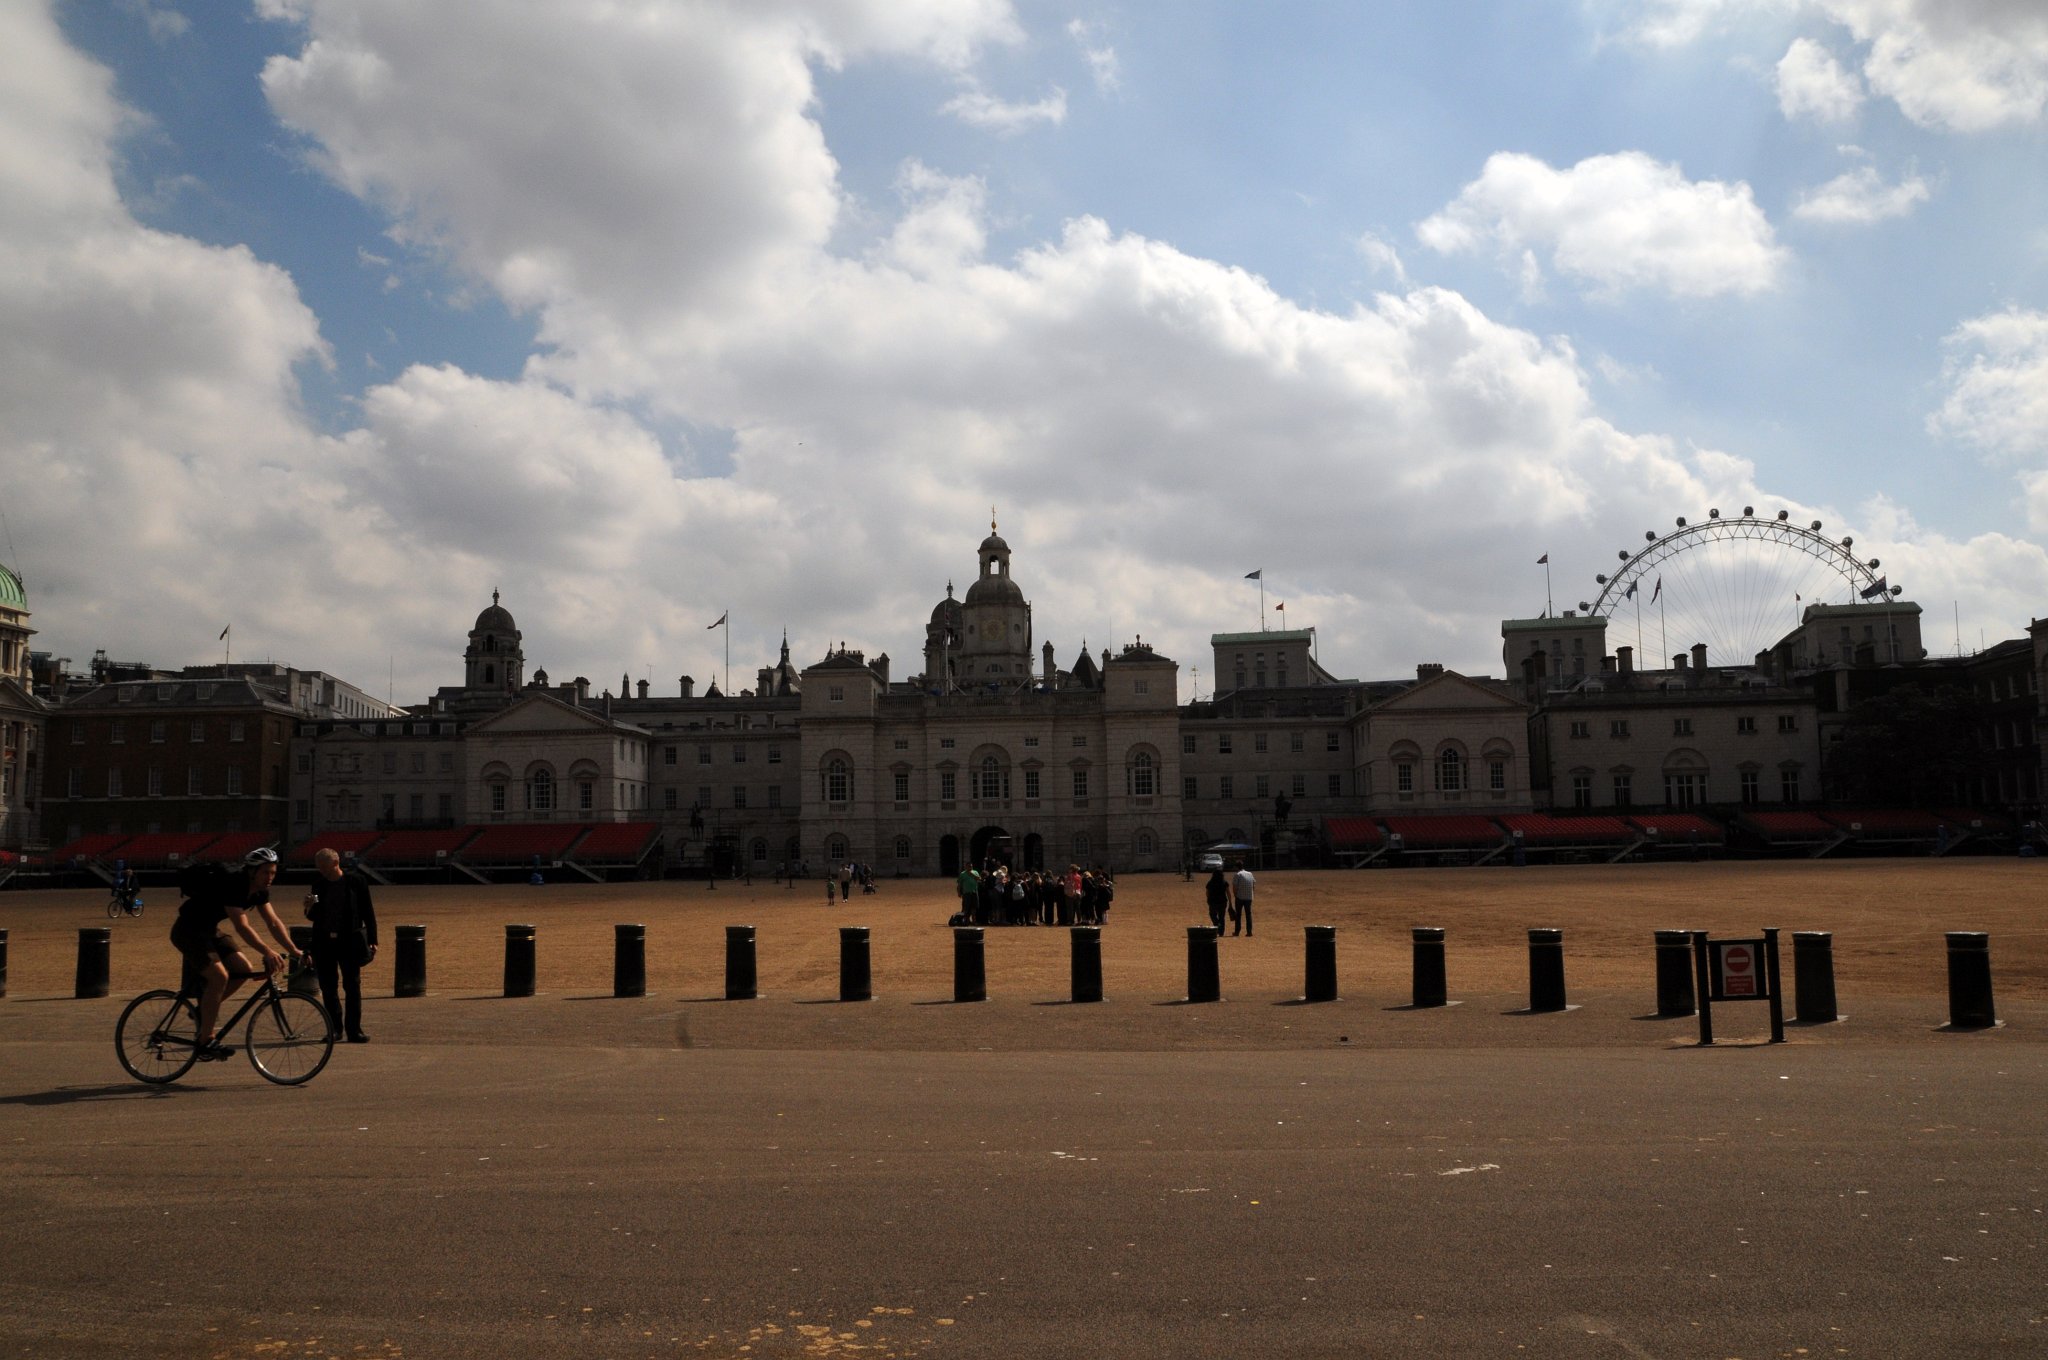 DSC_3807_1.jpg - Horse Guards Parade je velké přehlídkové prostranství ve Whitehallu v centru Londýna. Původně šlo o kolbiště Whitehallského paláce, kde se v době Jindřicha VIII. konaly rytířské turnaje. Bylo také místem každoročních oslav narozenin Alžběty I.Tato oblast byla používána pro vojenské přehlídky a jiné reprezentativní události od 17. století. Každý rok se zde odehrává velkolepá přehlídka na oslavu královniných narozenin - Trooping the Colour.